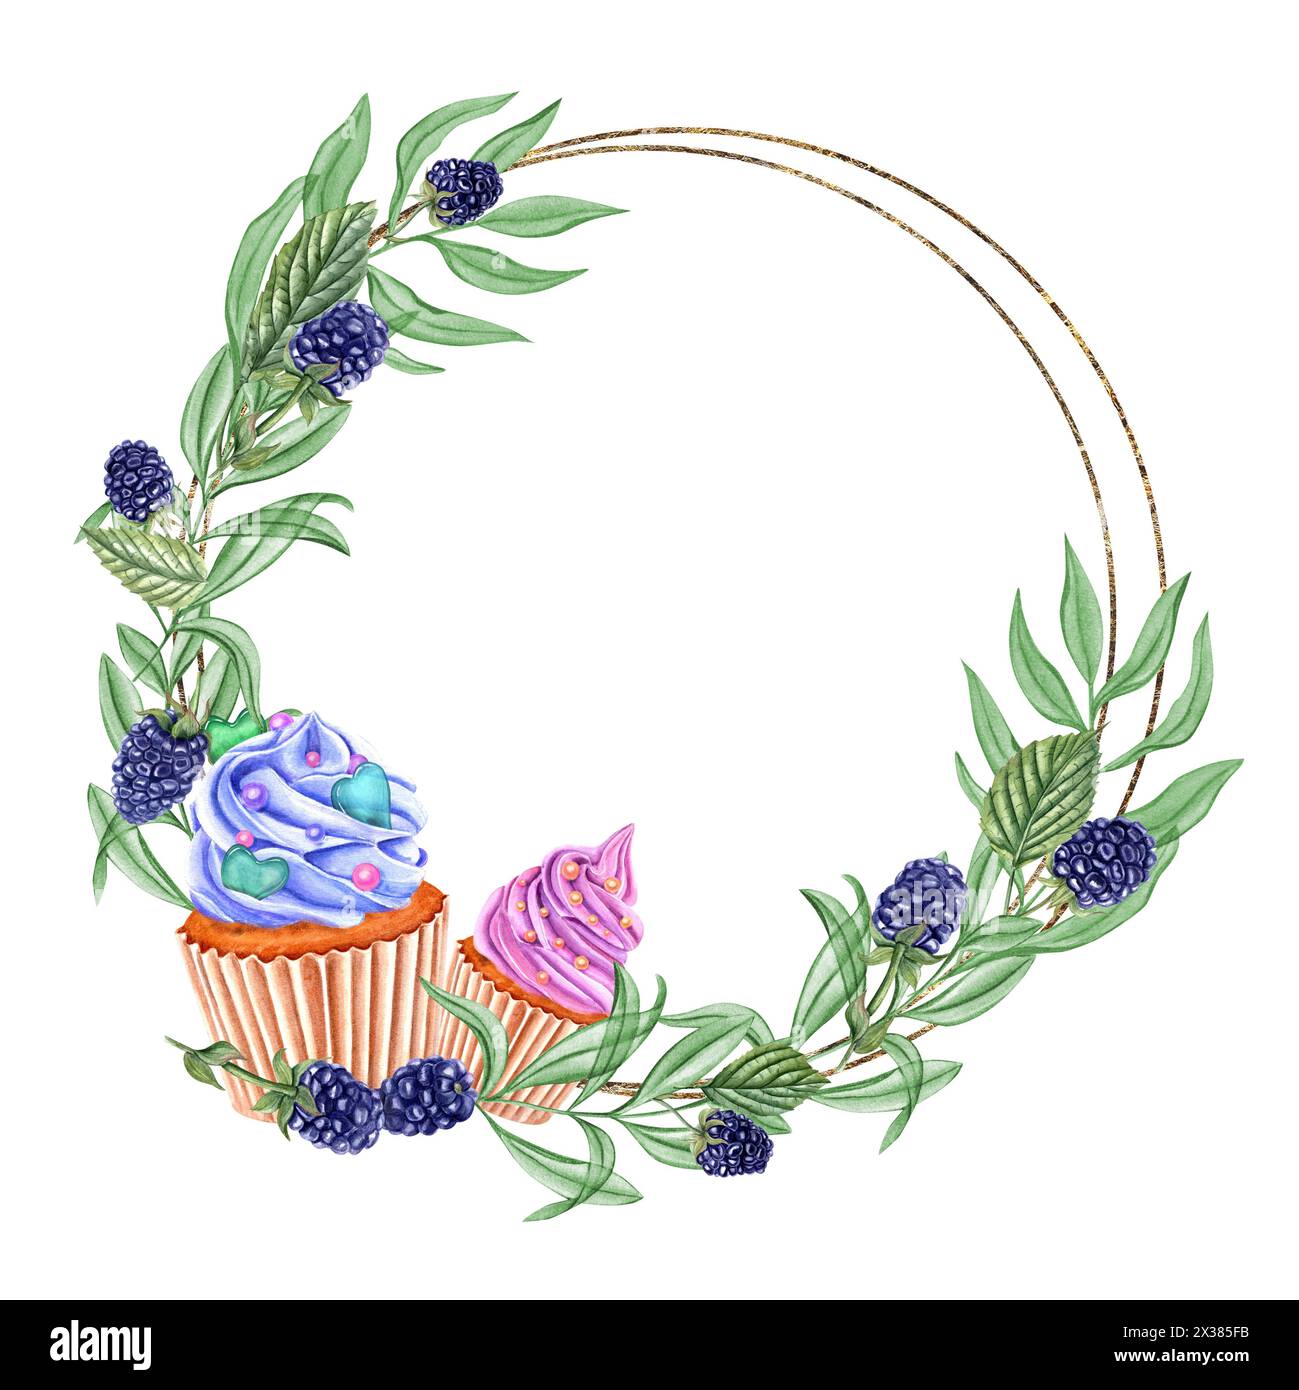 BlackBerry Cupcakes mit Schlagsahne. Runder goldener Rahmen mit grünen Blättern und Beeren. Kopierbereich für Text. Rosafarbene und blaue Muffins mit Belag Stockfoto